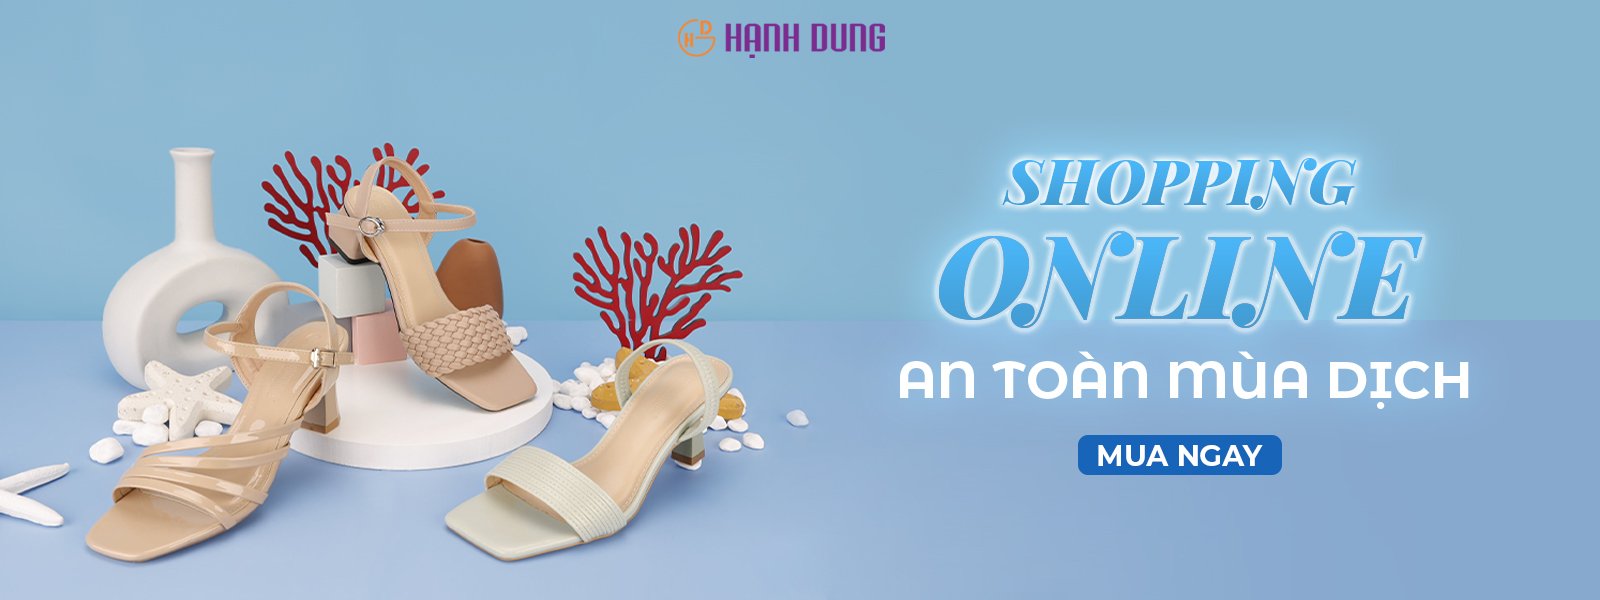 Top 8 cửa hàng giày dép đẹp nhất ở TP. HCM -  Shop Giày Thời Trang Hạnh Dung